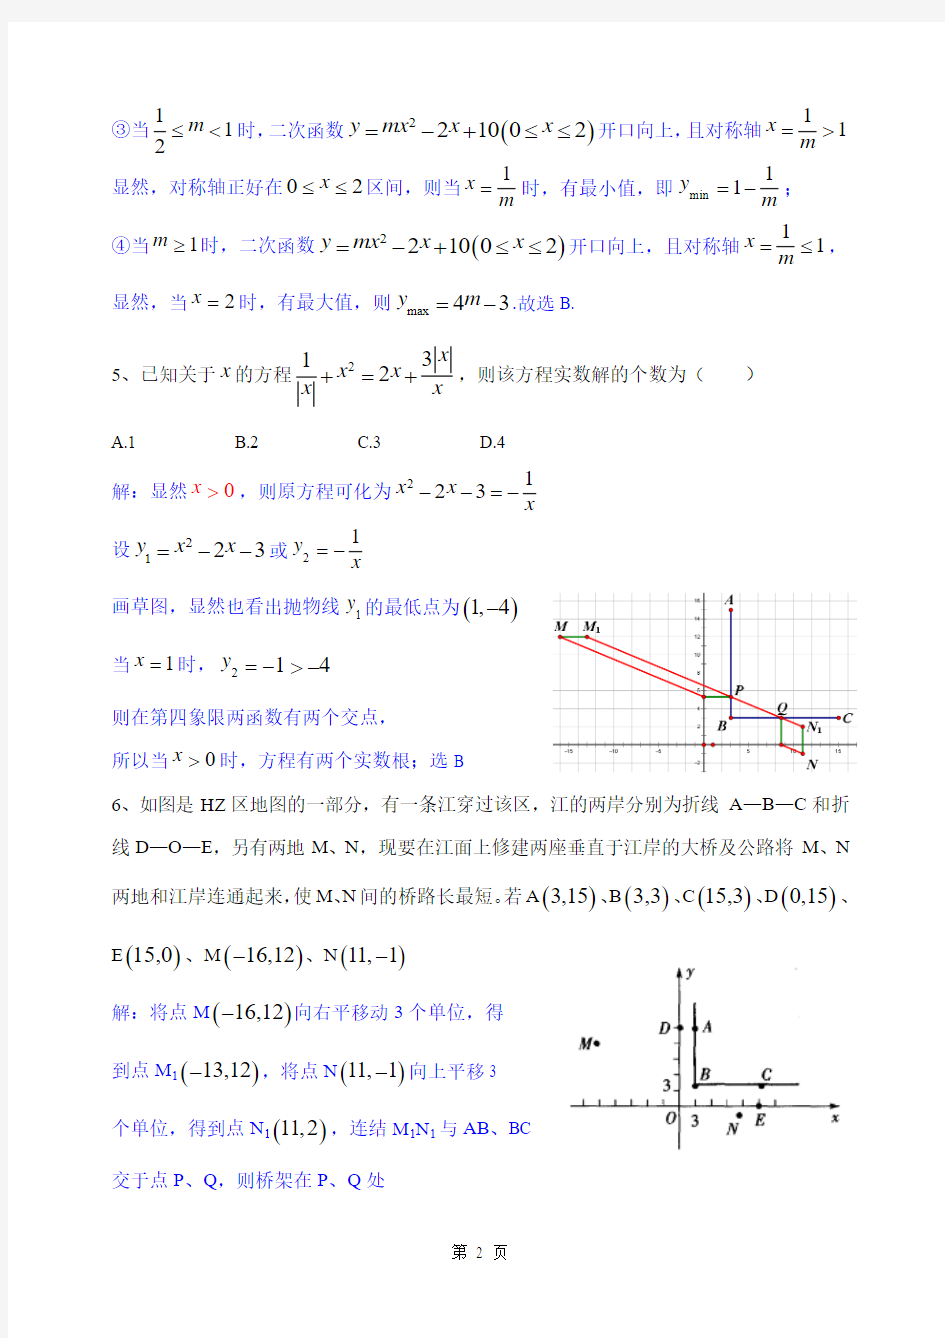 2015年湛江一中高一实验班招生考试数学科试节选